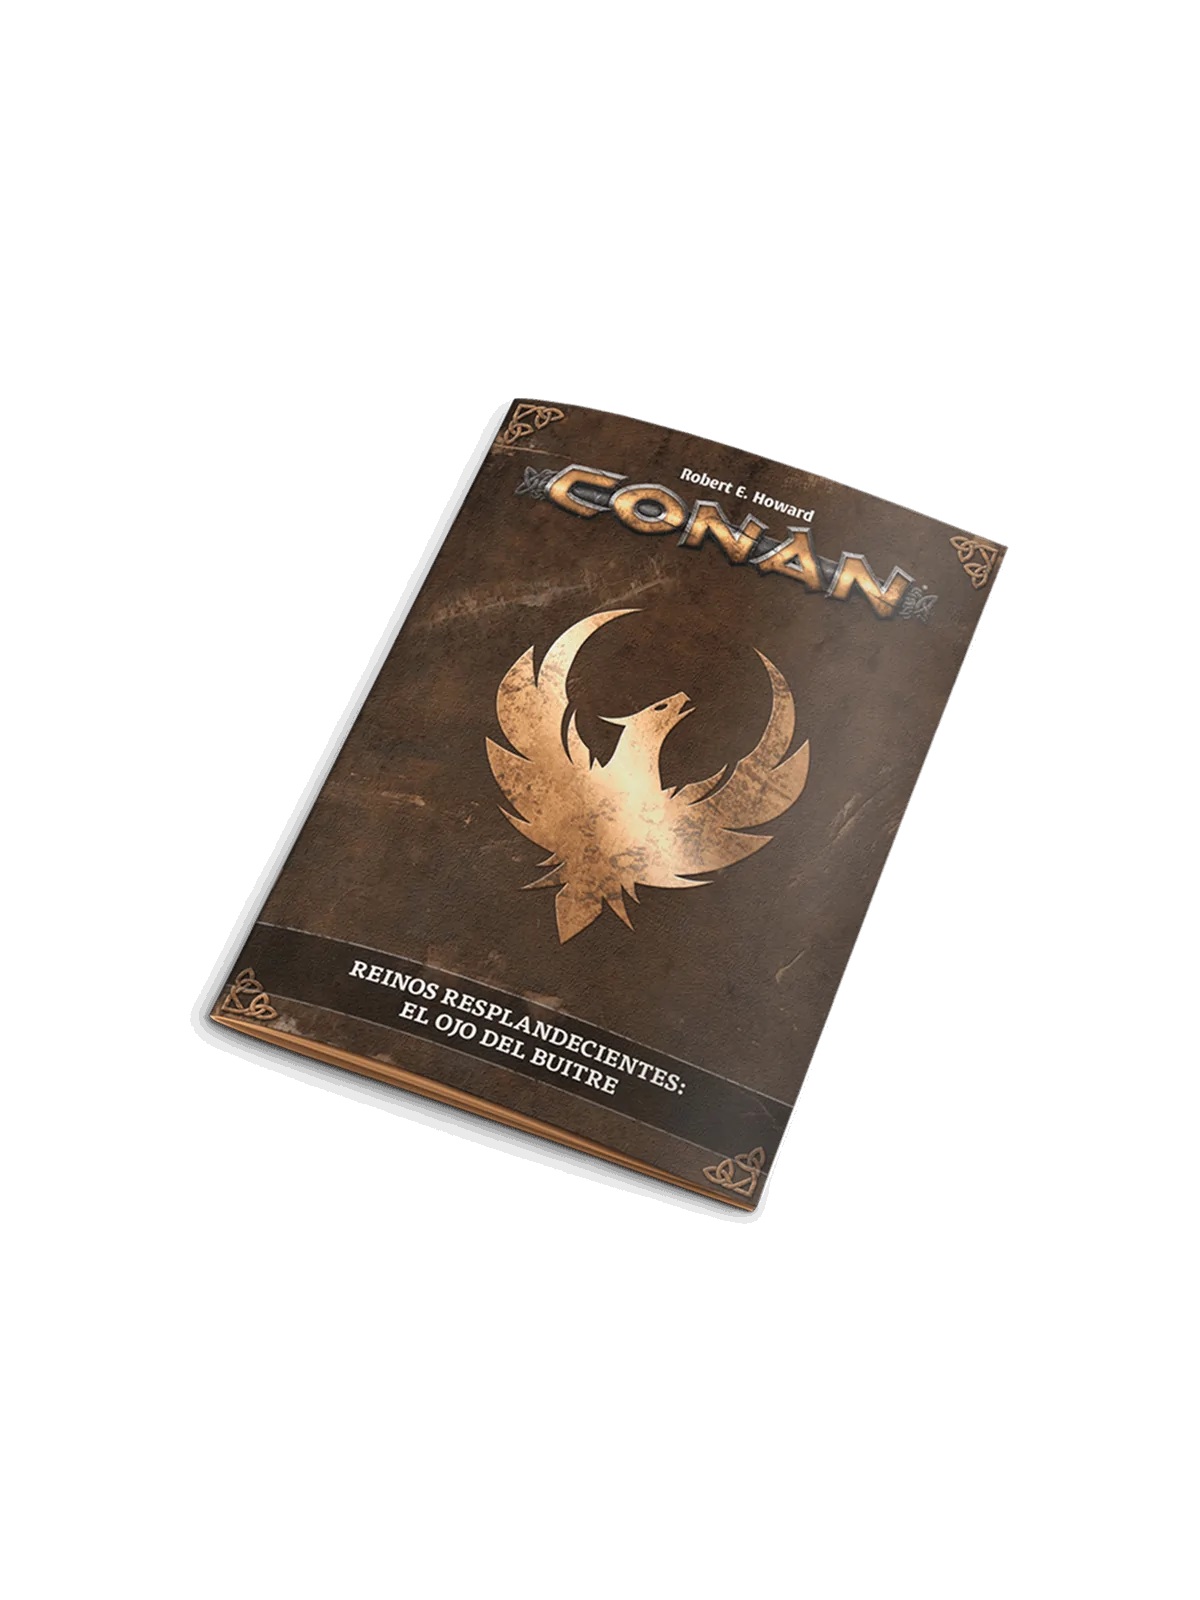 Comprar Conan: Reinos Resplandecientes - Los Moradores del Abismo bara